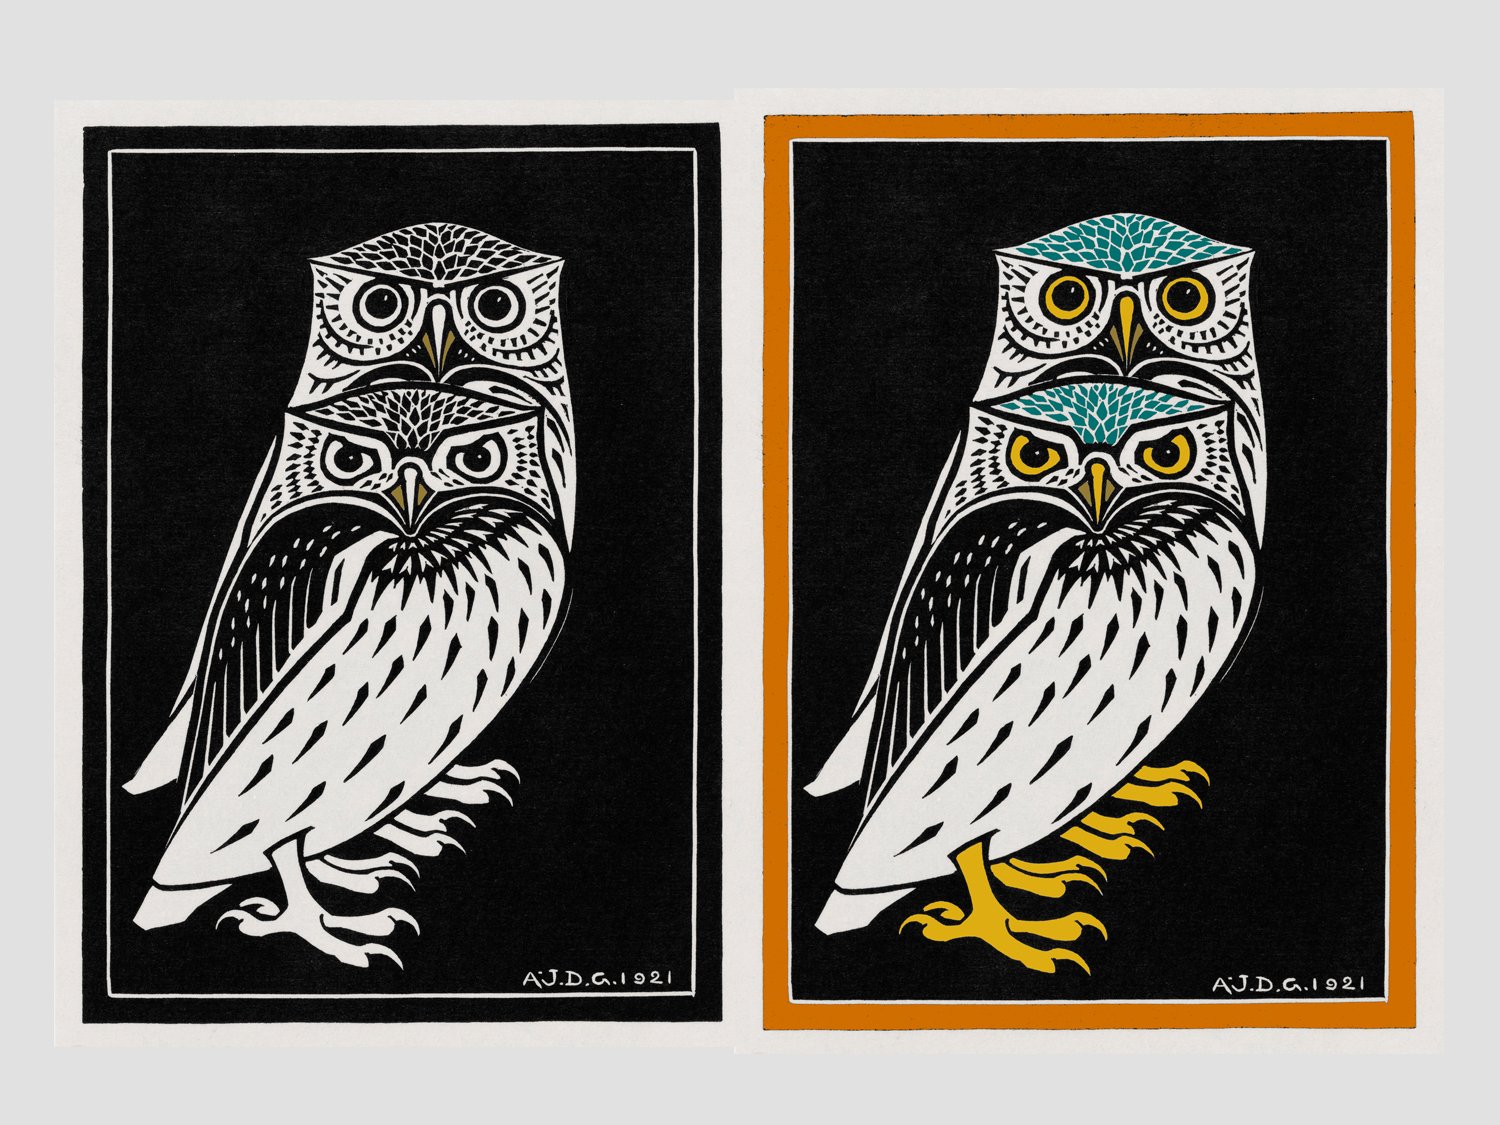 Owl Blockprint vihgnette.jpg